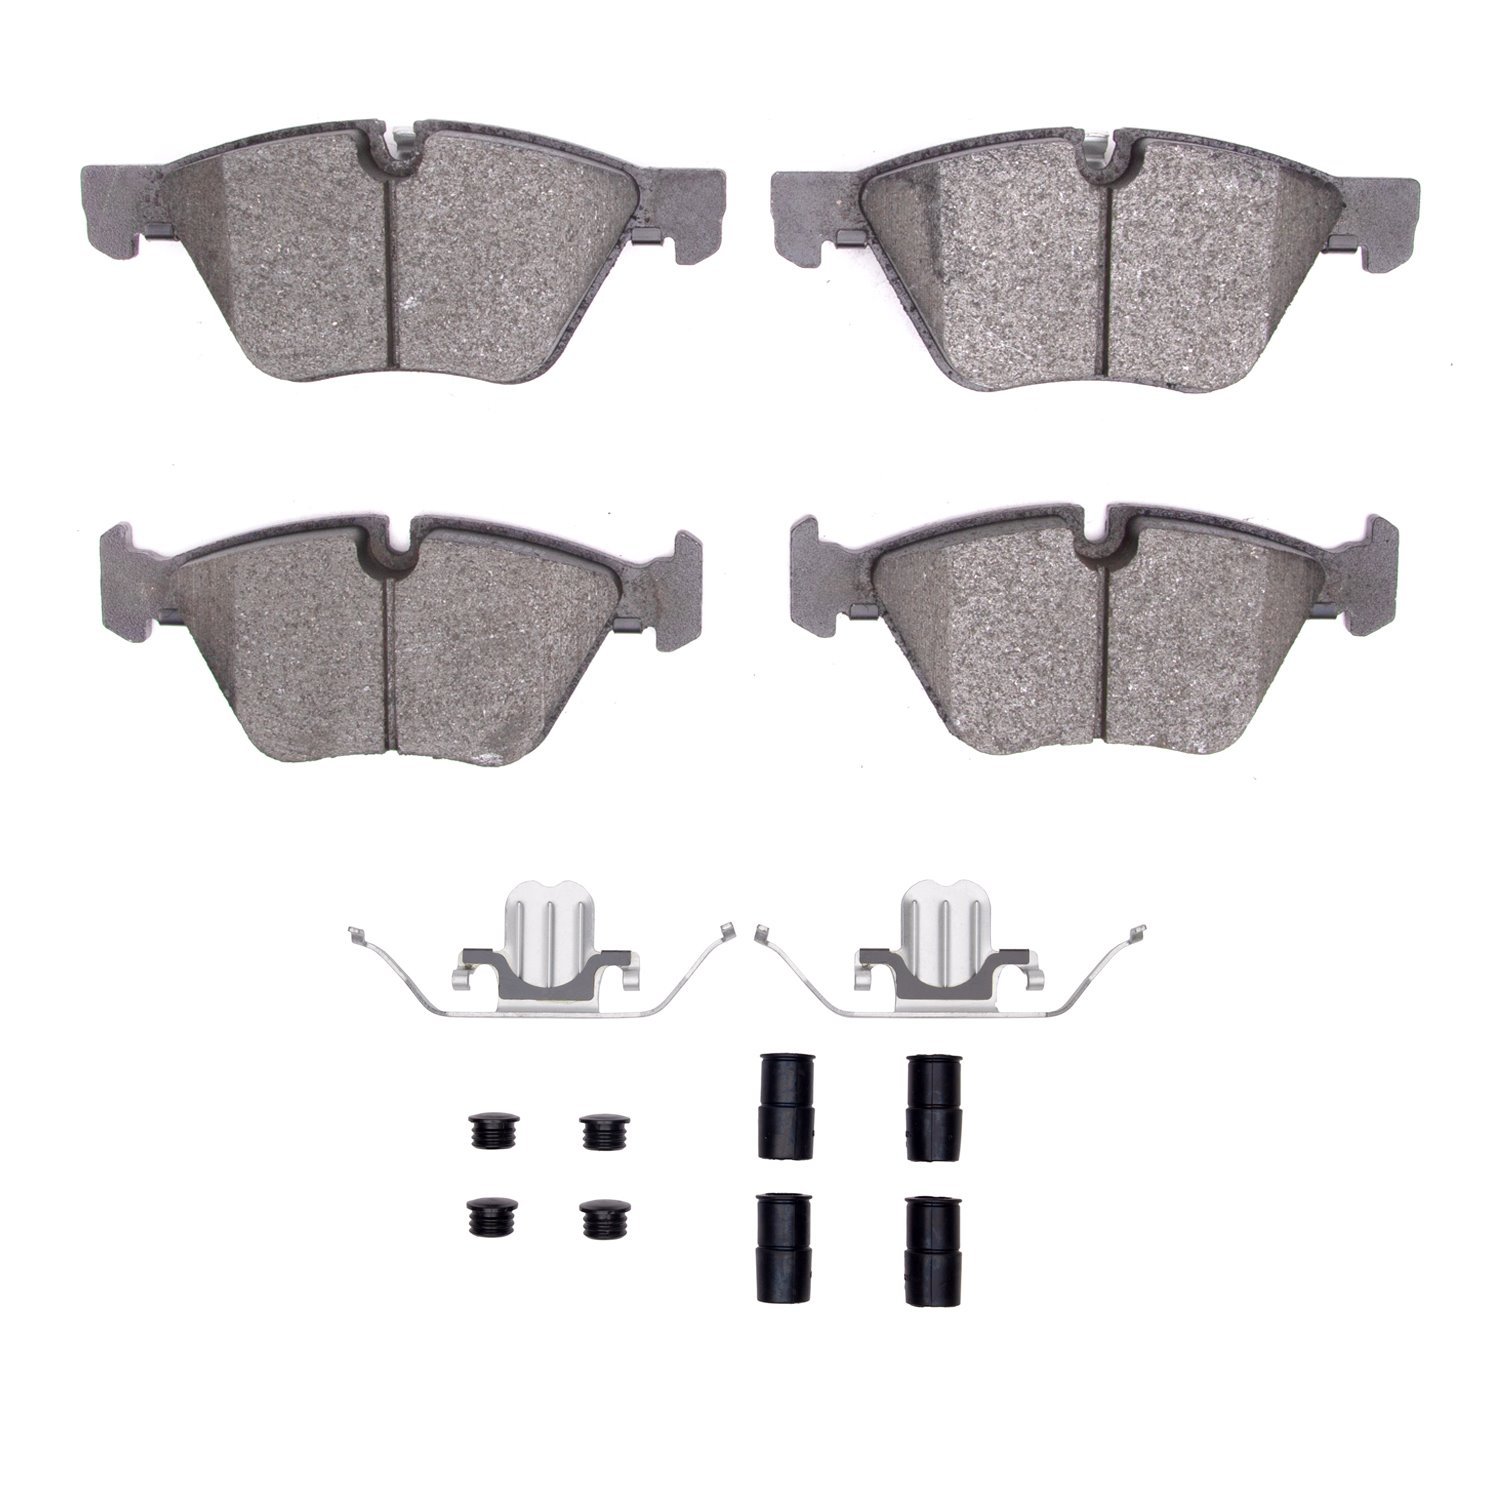 1310-1061-11 3000-Series Ceramic Brake Pads & Hardware Kit, 2007-2013 BMW, Position: Front